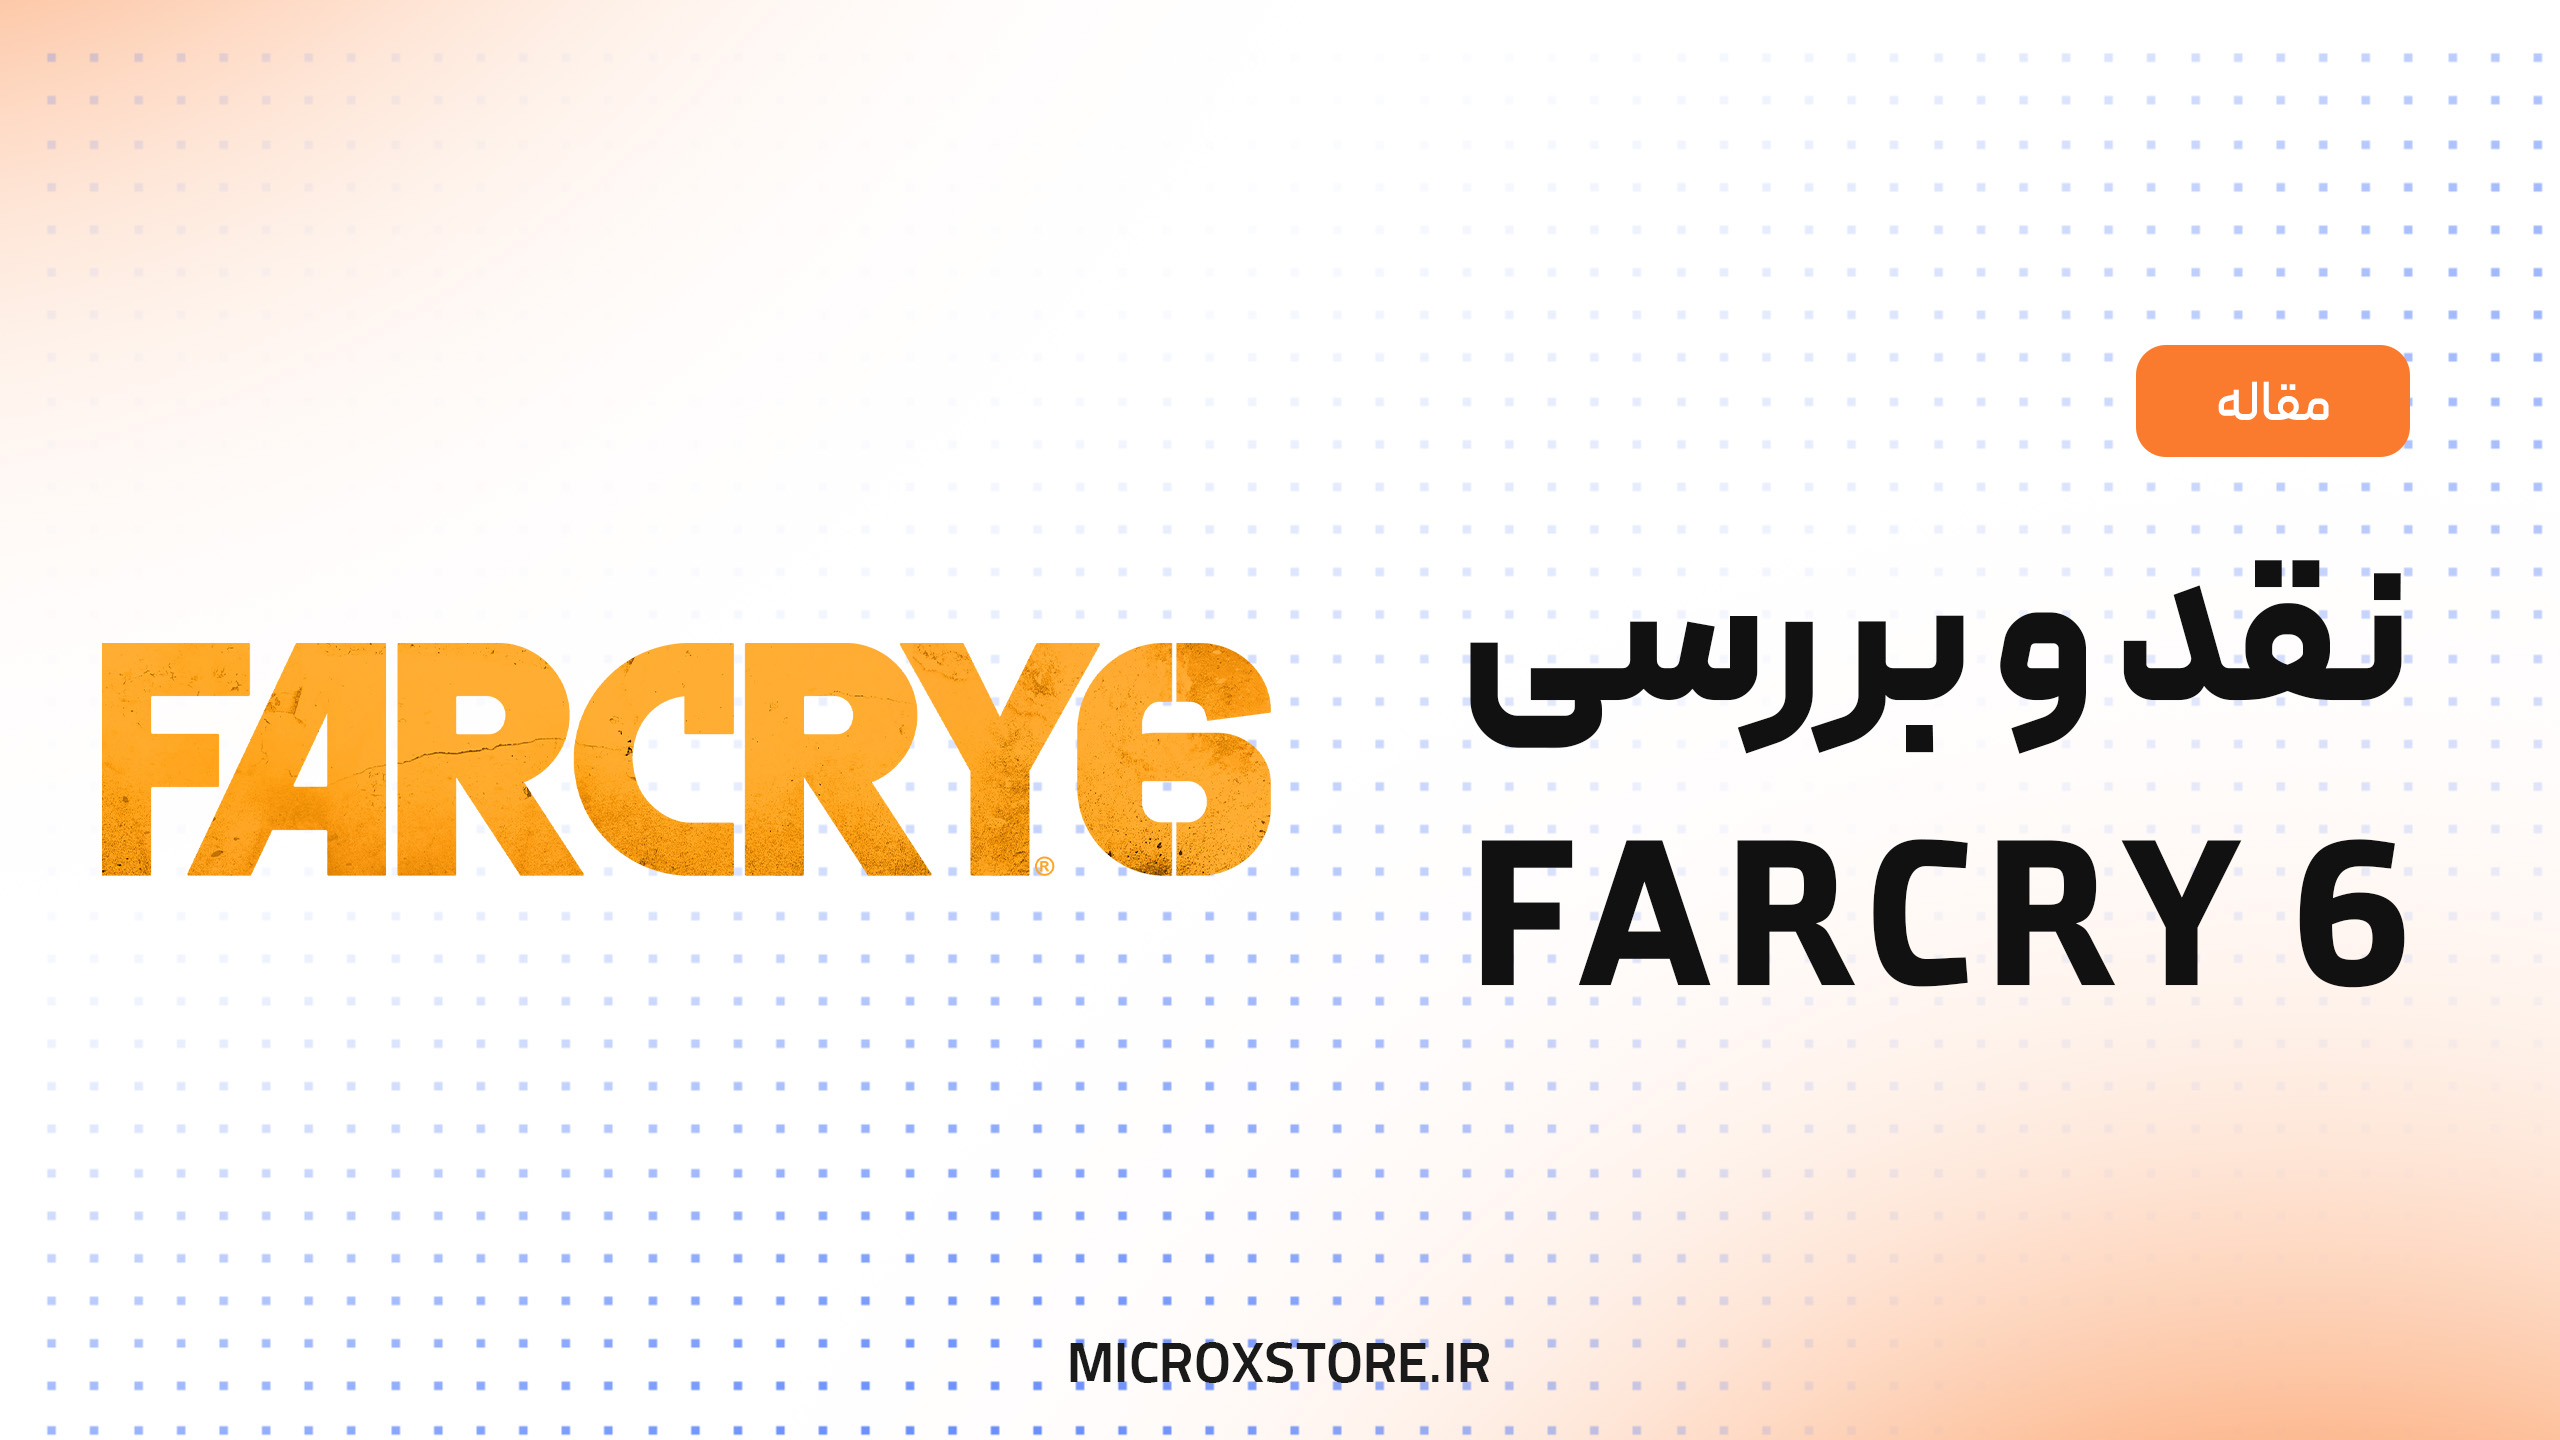 نقد و بررسی بازی Far cry 6